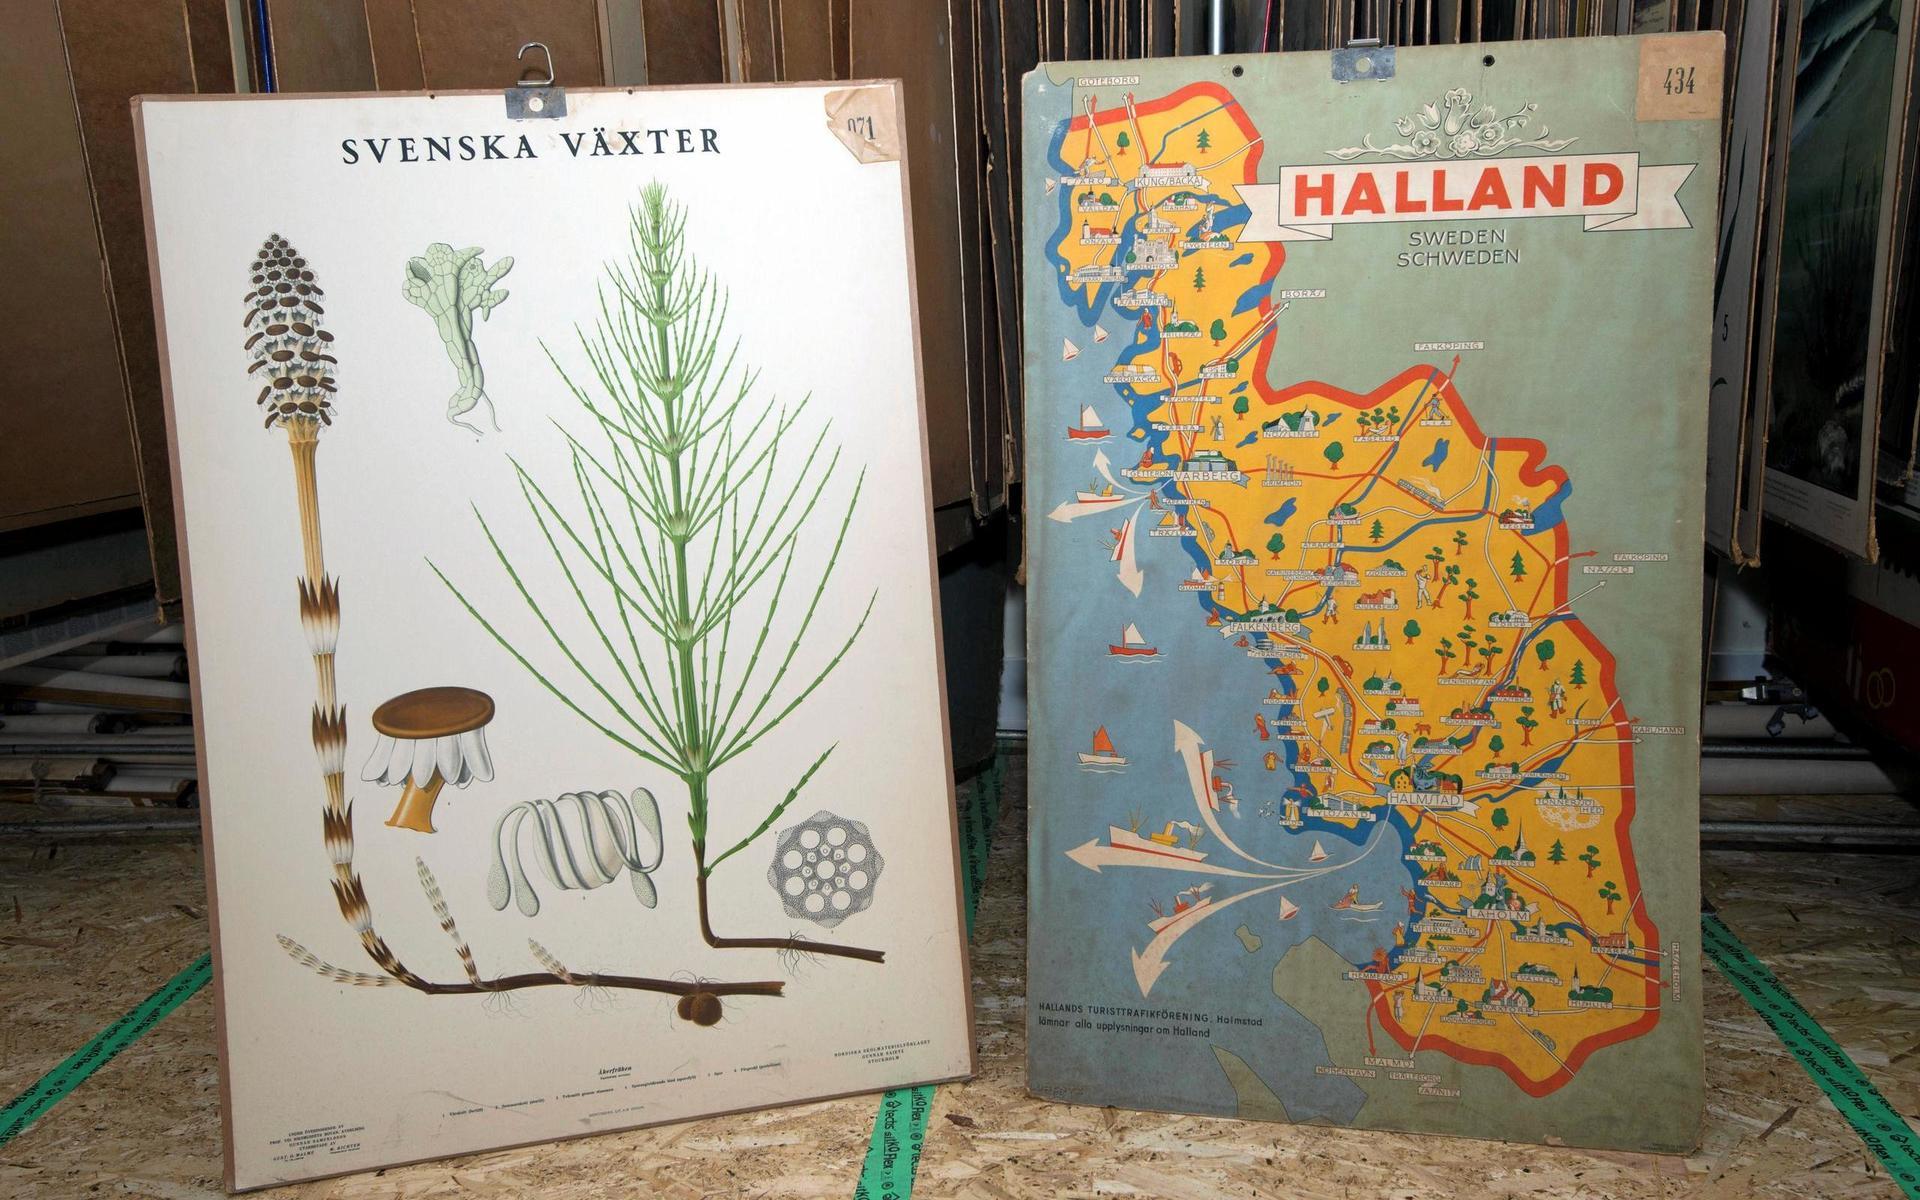 Genom en liten text i hörnet går det att se att kartan över Halland är från 1934.